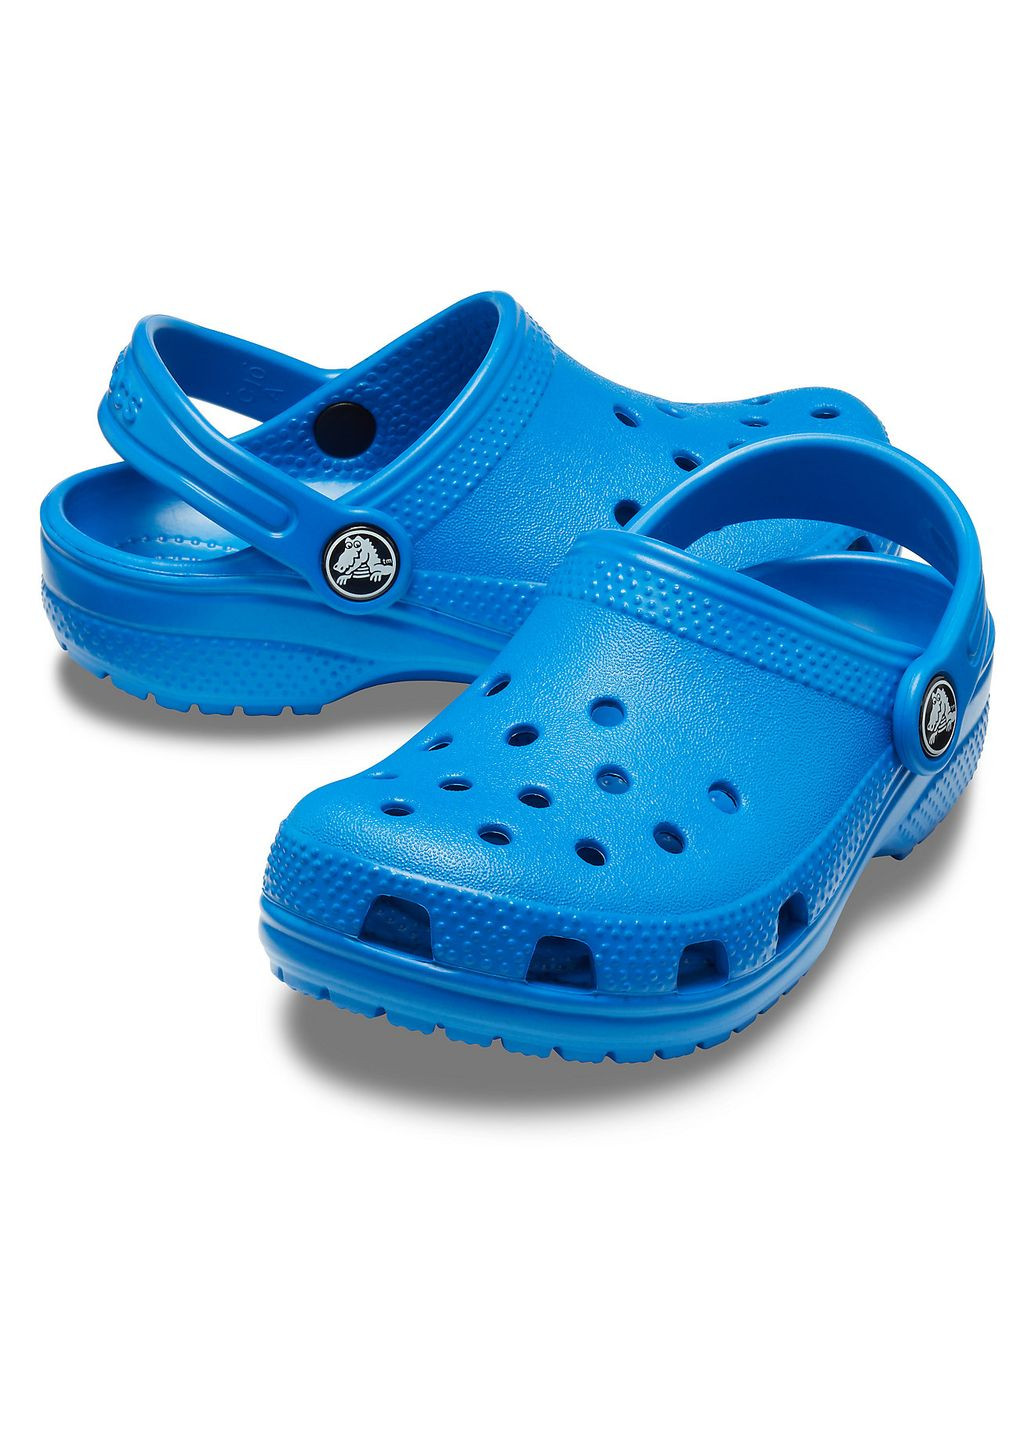 Синие сабо kids classic clog blue bolt c11\28\18 см 206991 Crocs